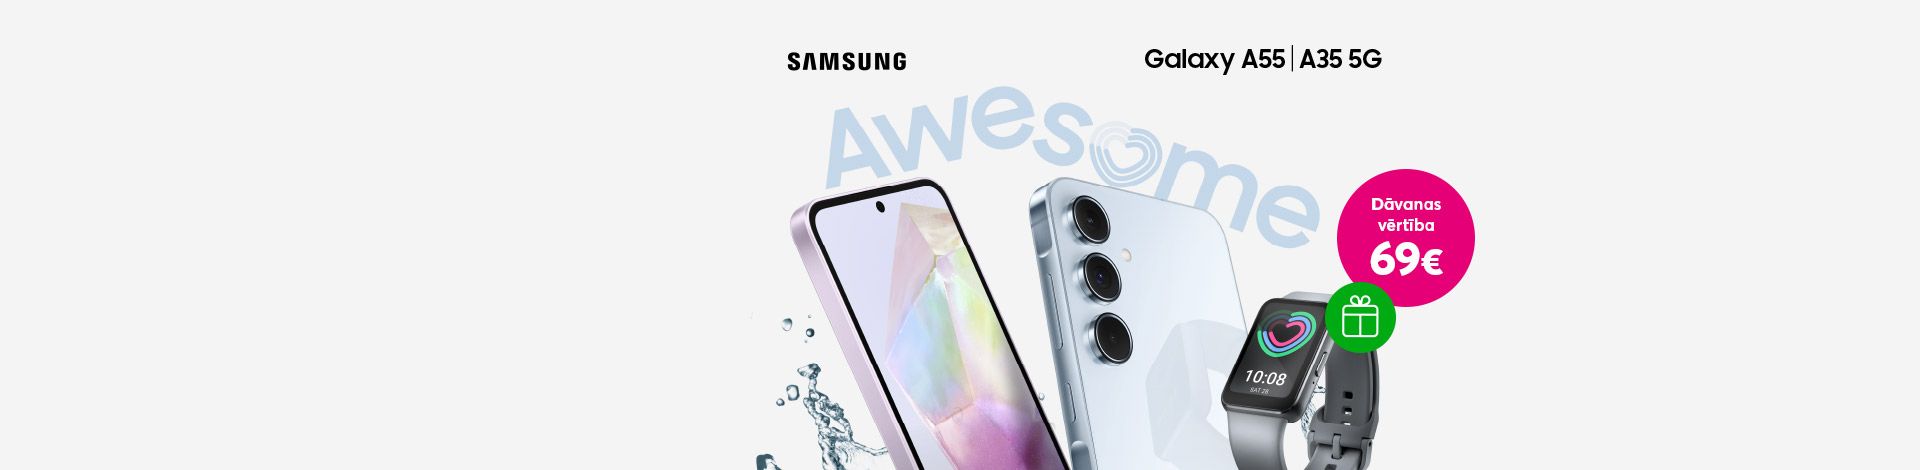 Iegādājies jaunāko Samsung Galaxy A sērijas viedtālruni un saņem dāvanā Galaxy Fit3 viedpulksteni!